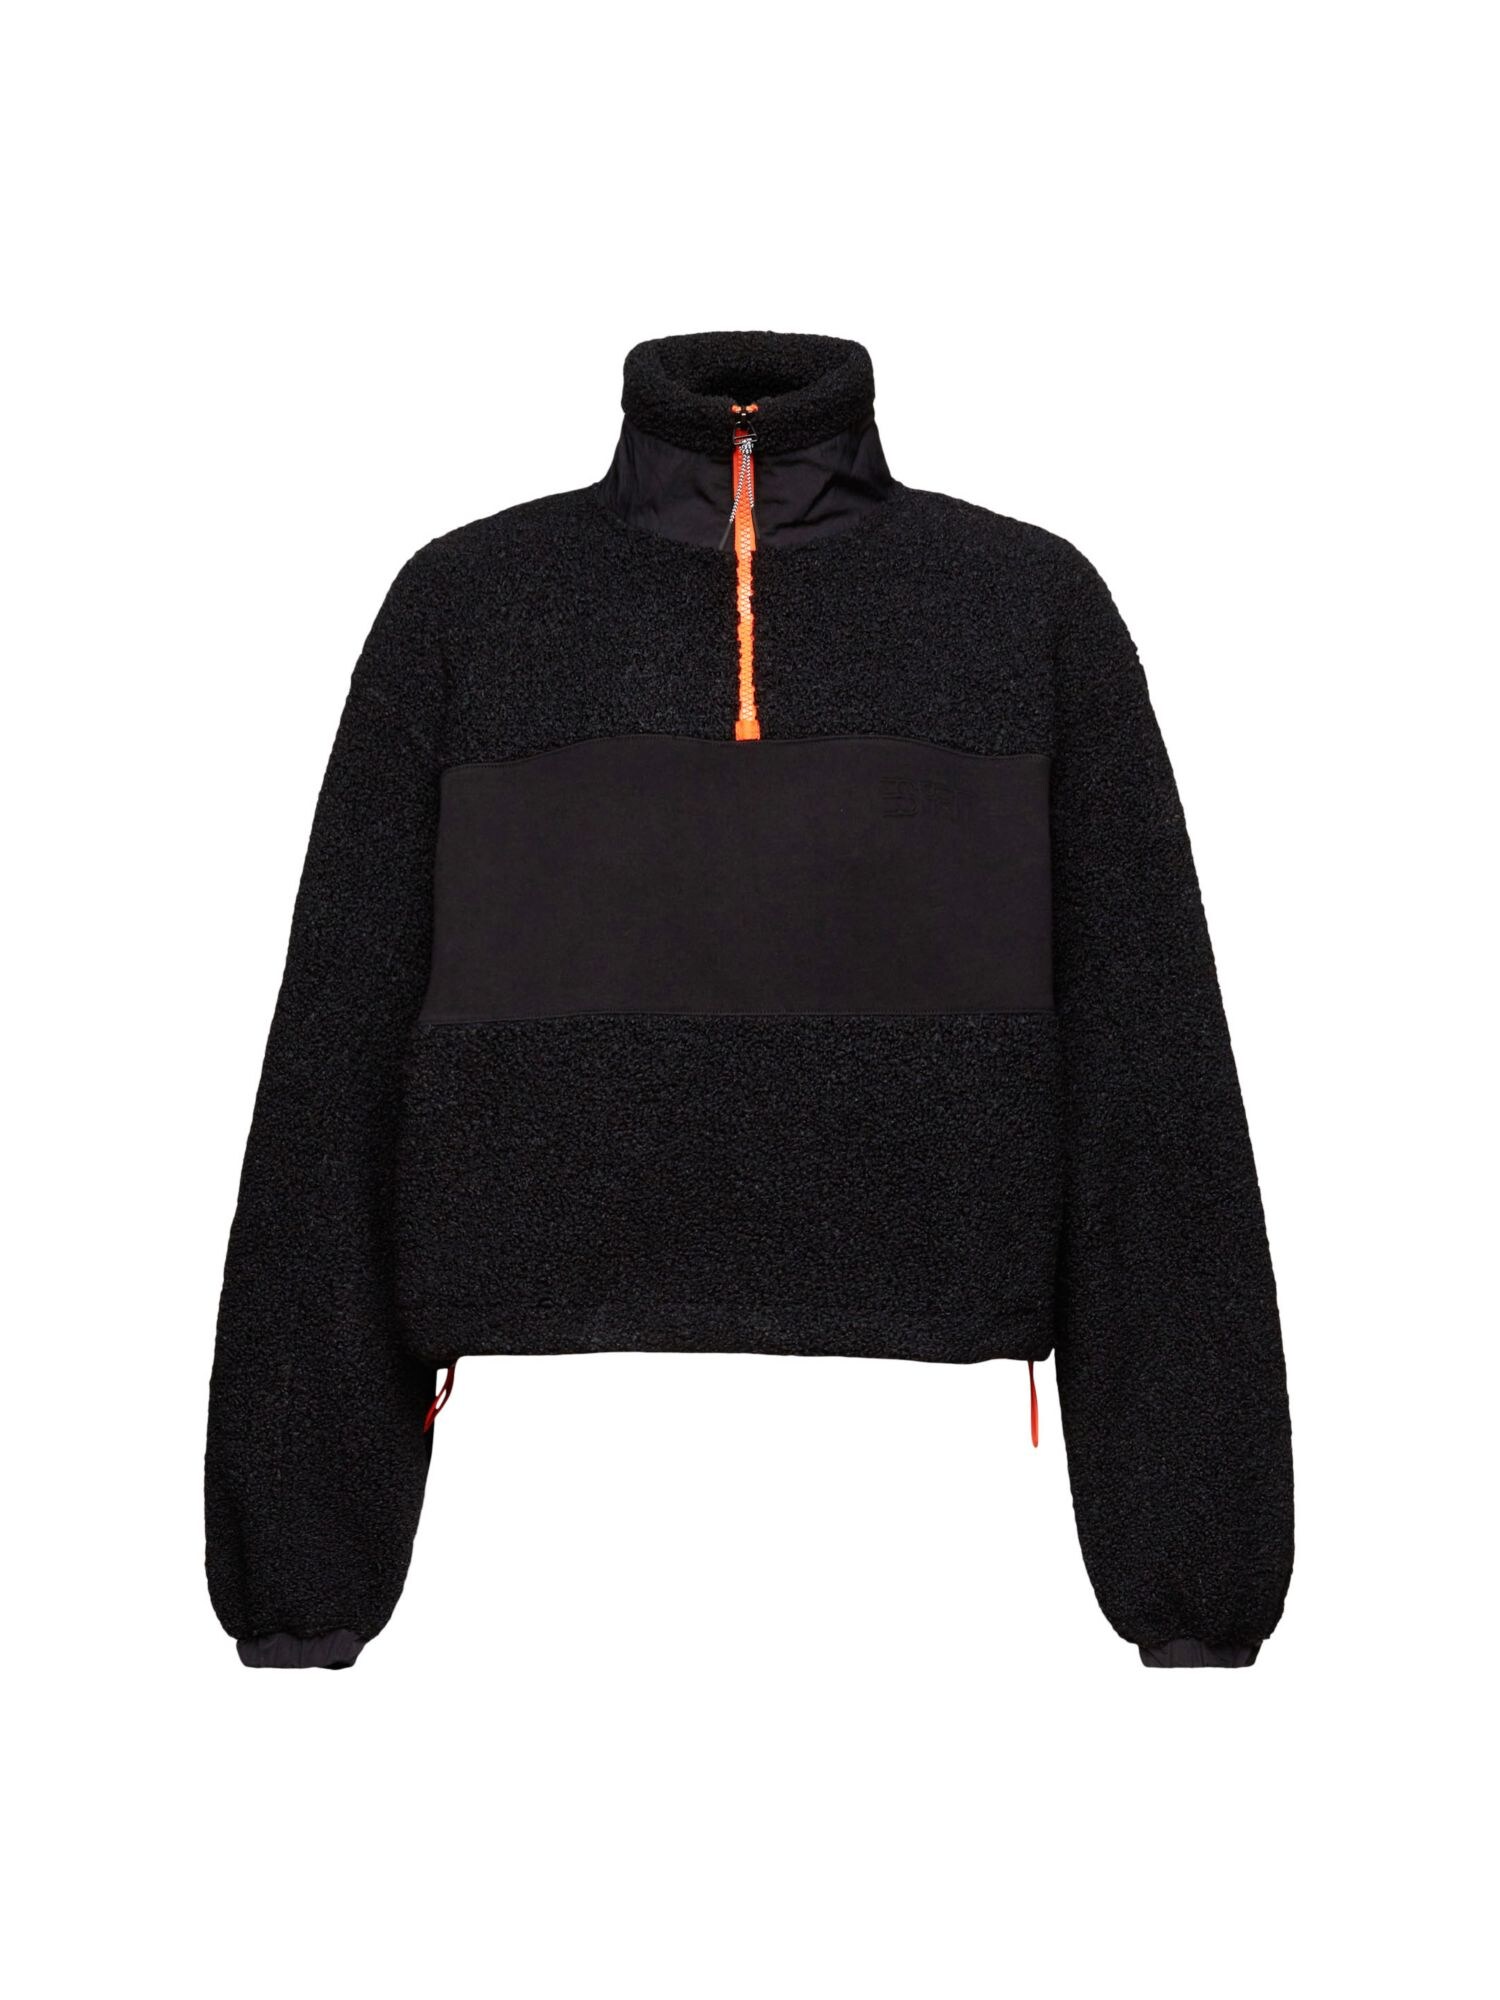 Esprit ESPRIT Sweatshirt orange / schwarz